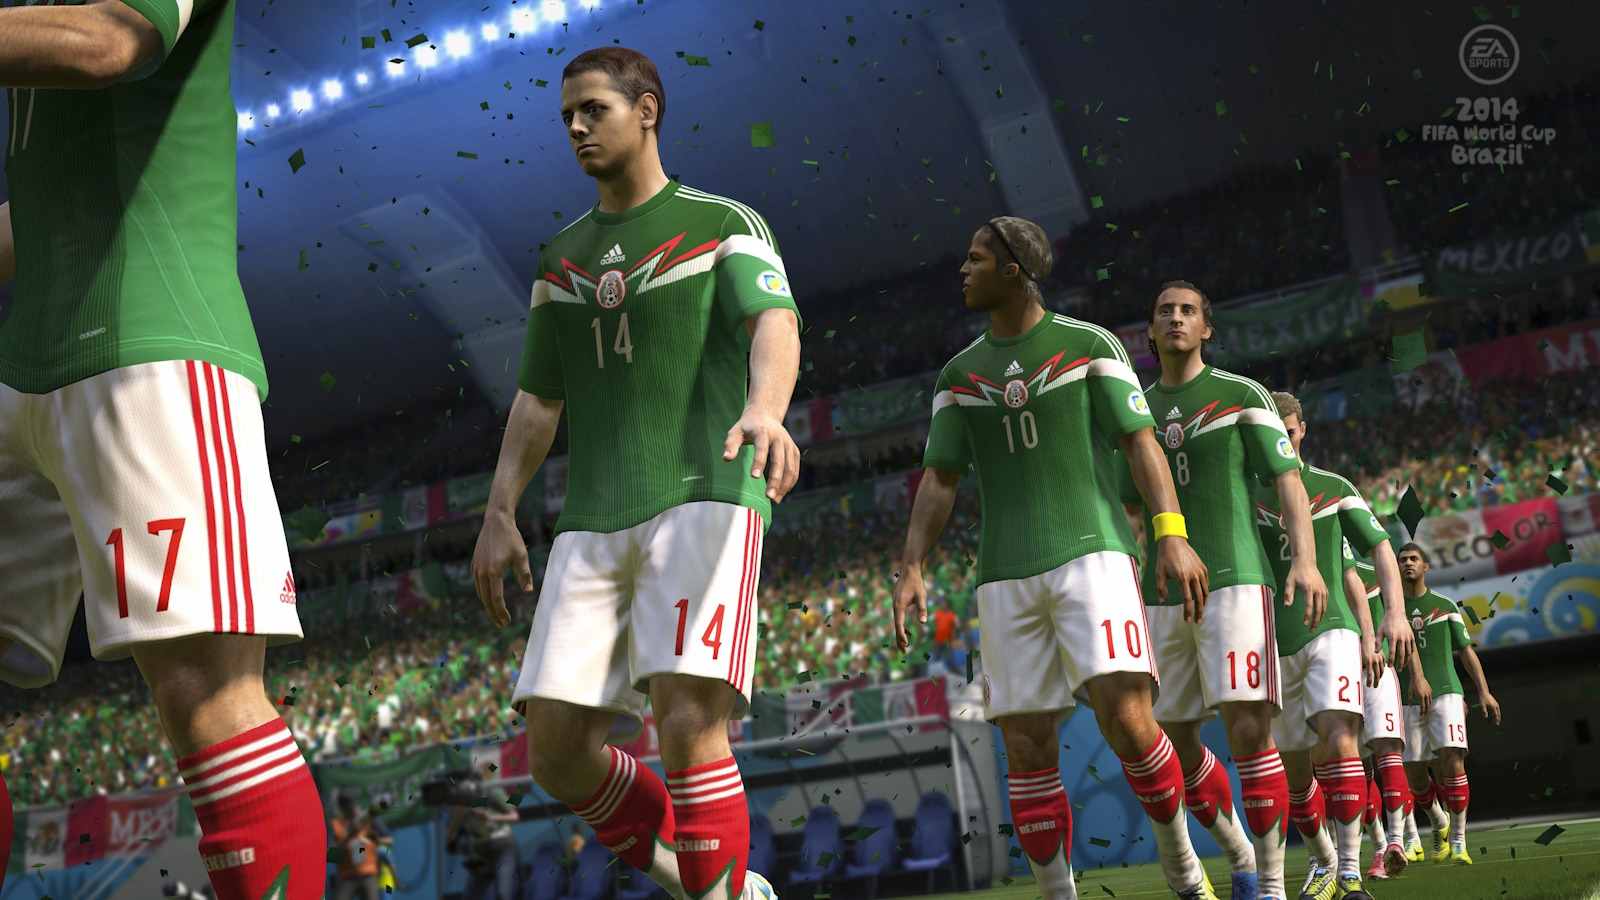 Скриншот из игры 2014 FIFA World Cup Brazil под номером 11